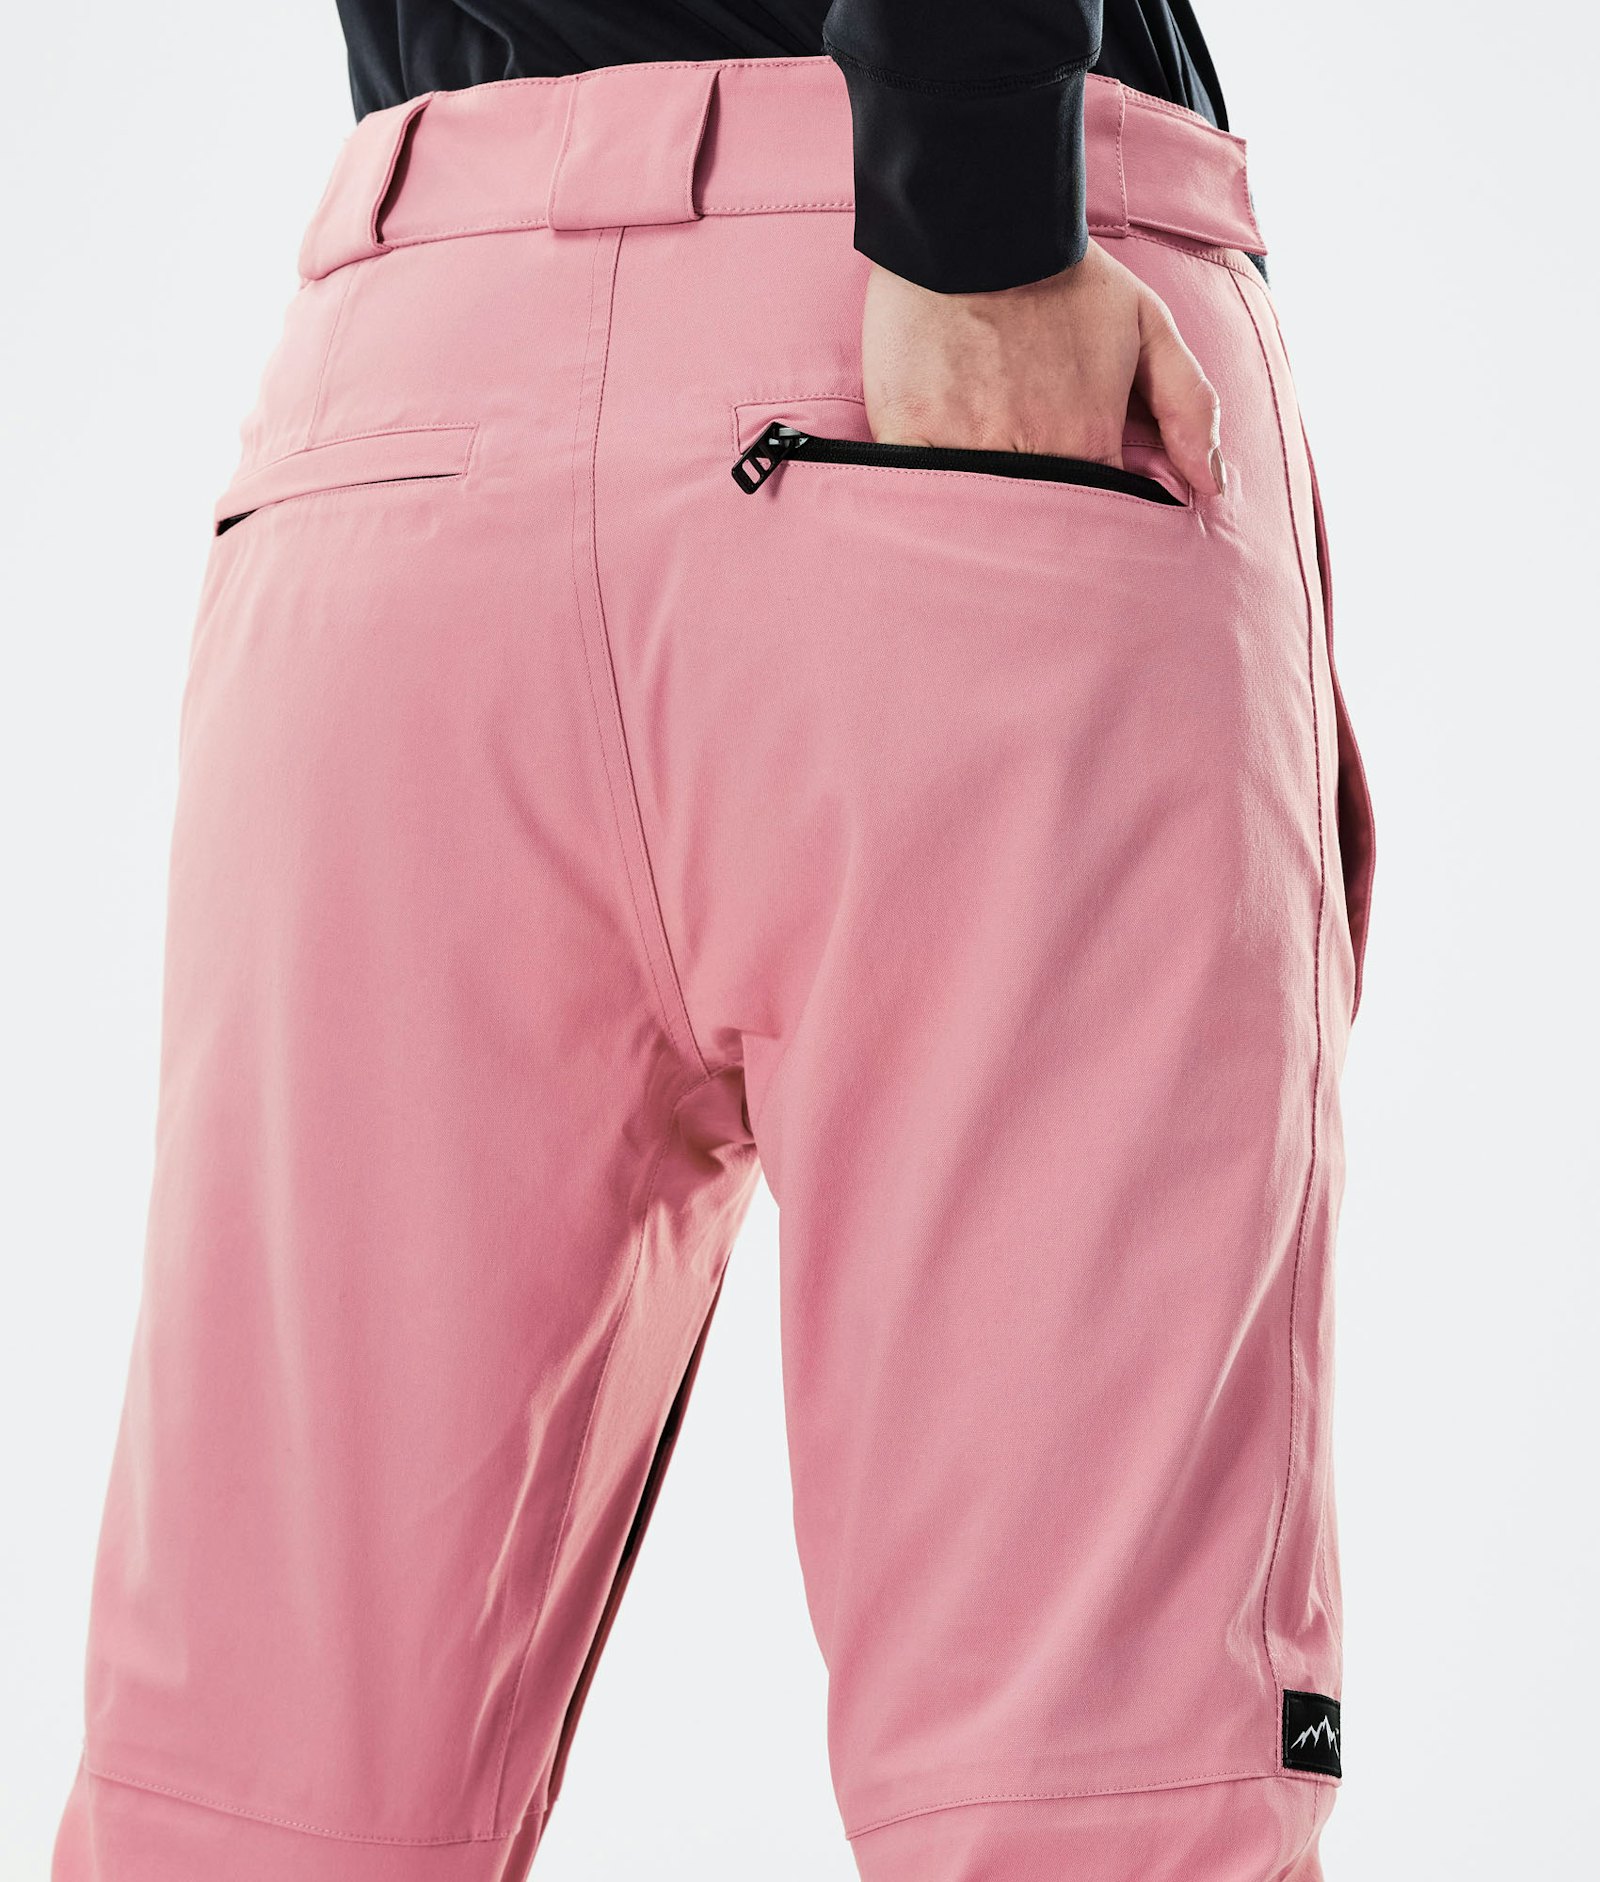 Con W 2020 Ski Pants Women Pink